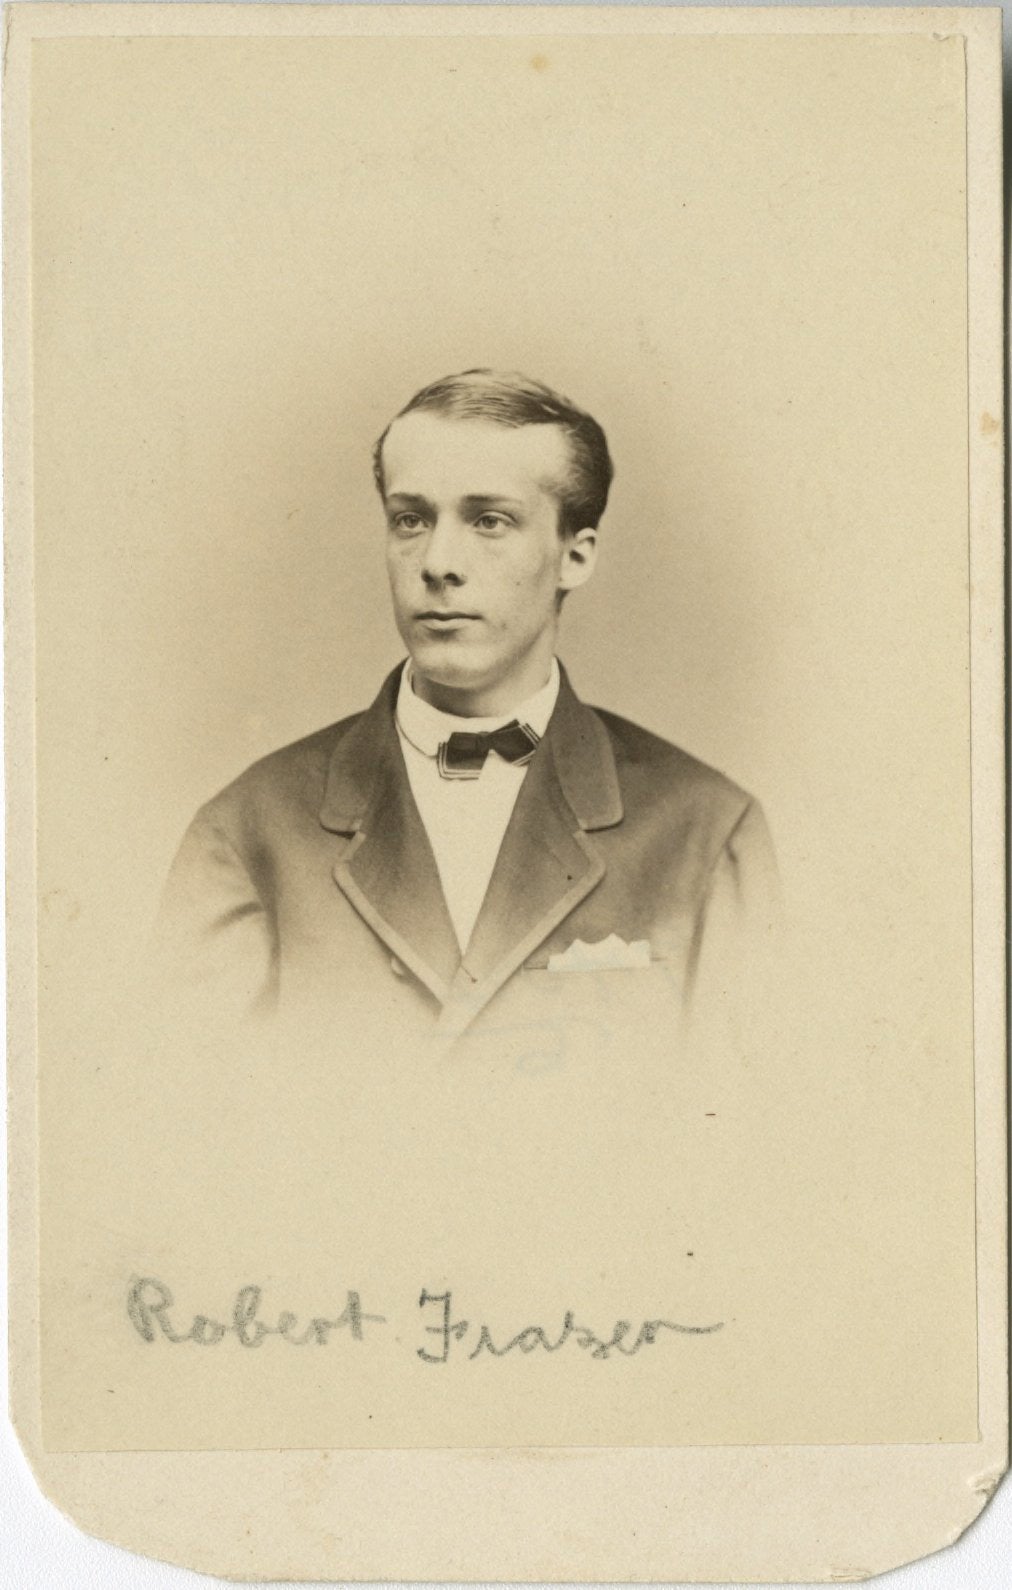 Robert Frazer III, 1867